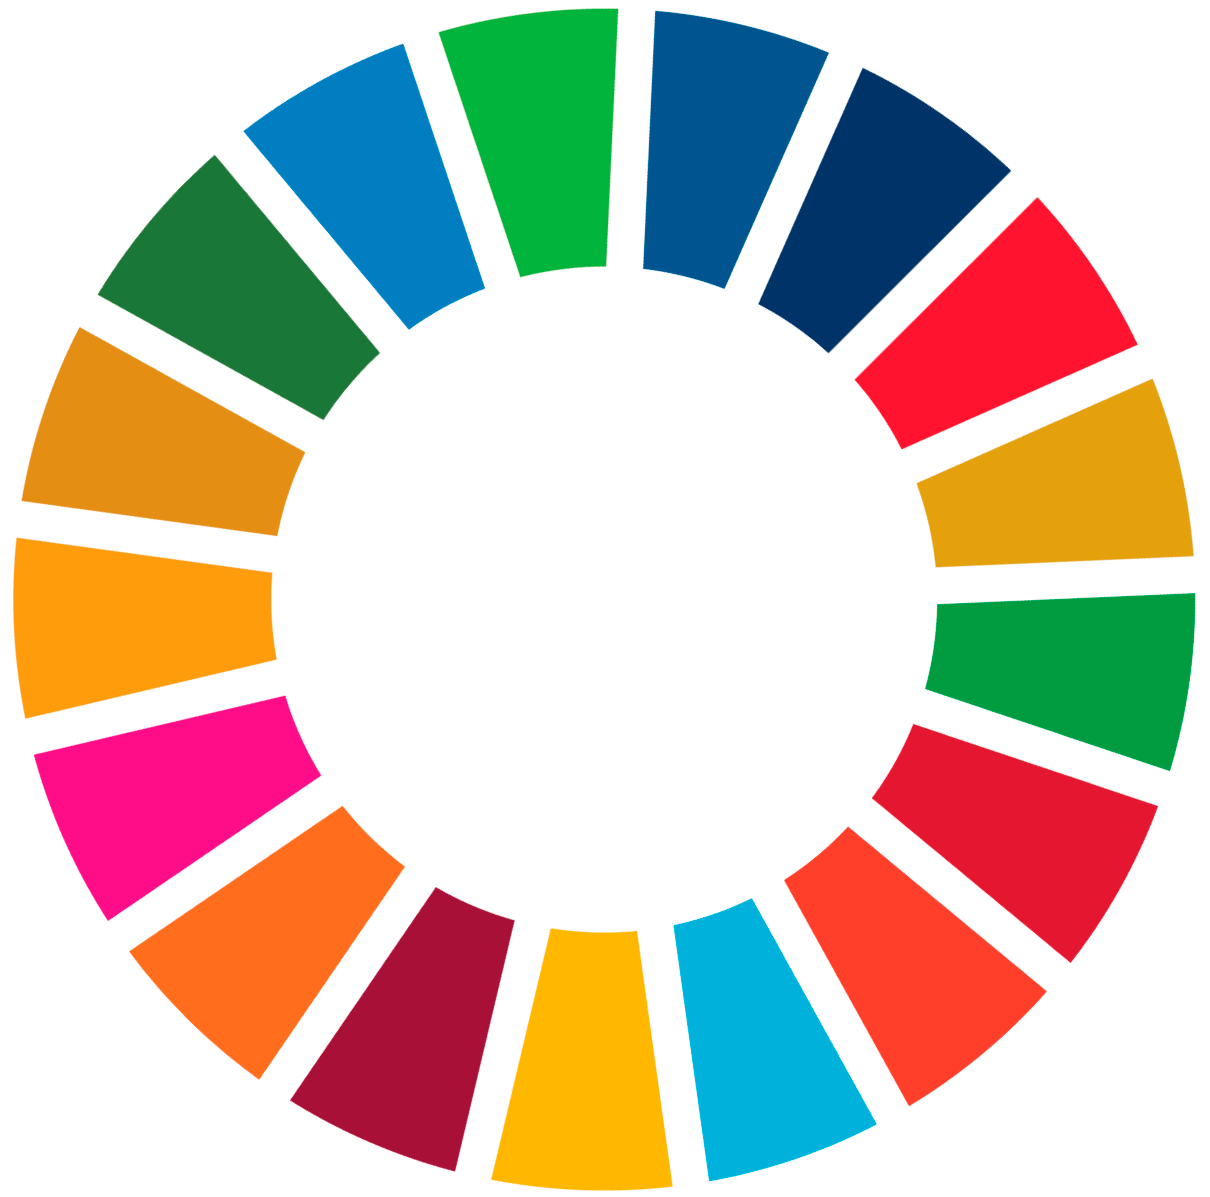 Los 17 ODS (Objetivos de Desarrollo Sostenible)